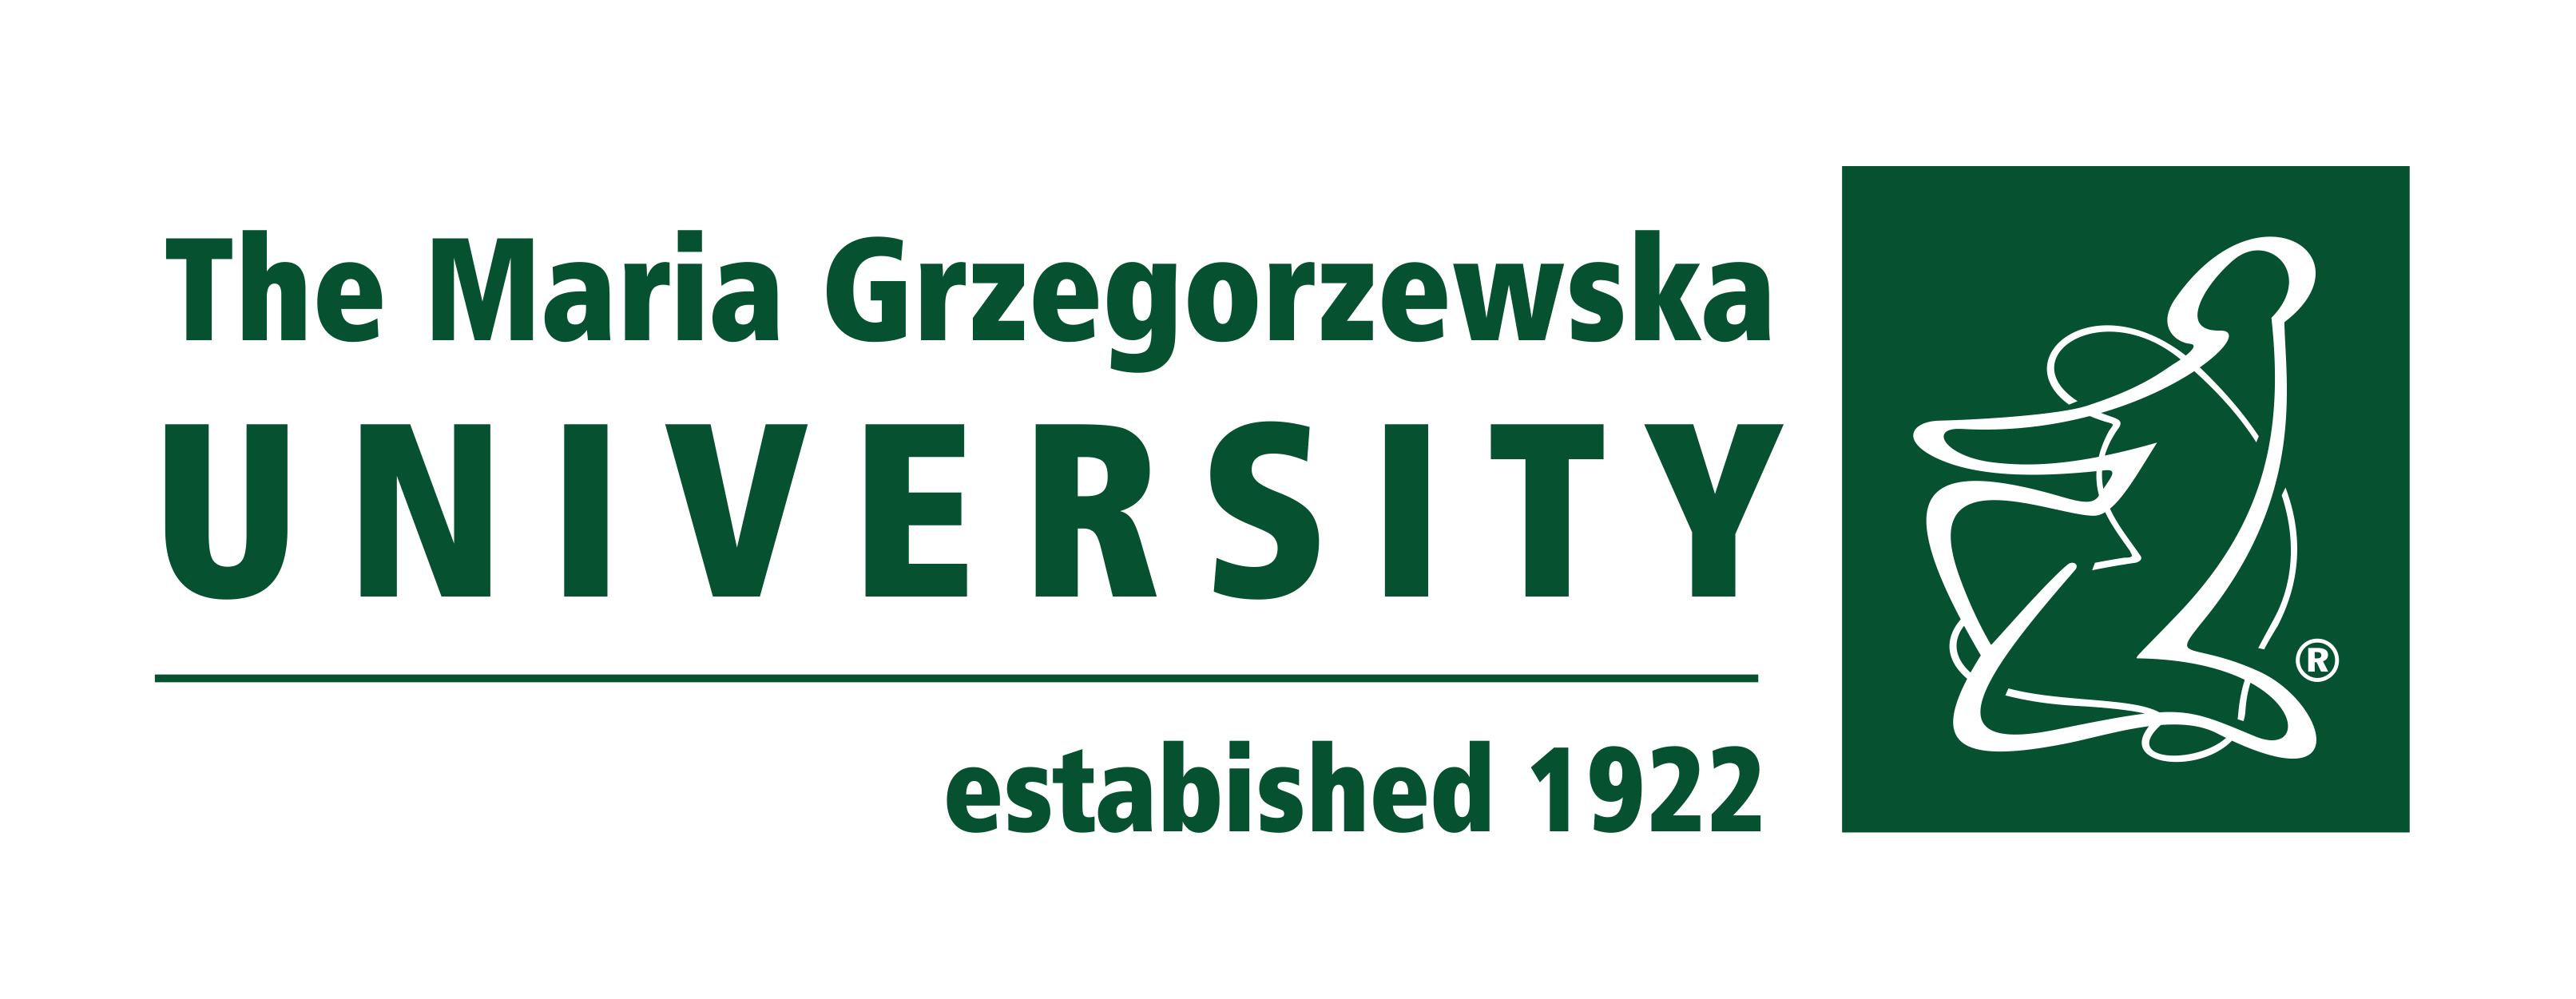 Maria Grzegorzewska University logo